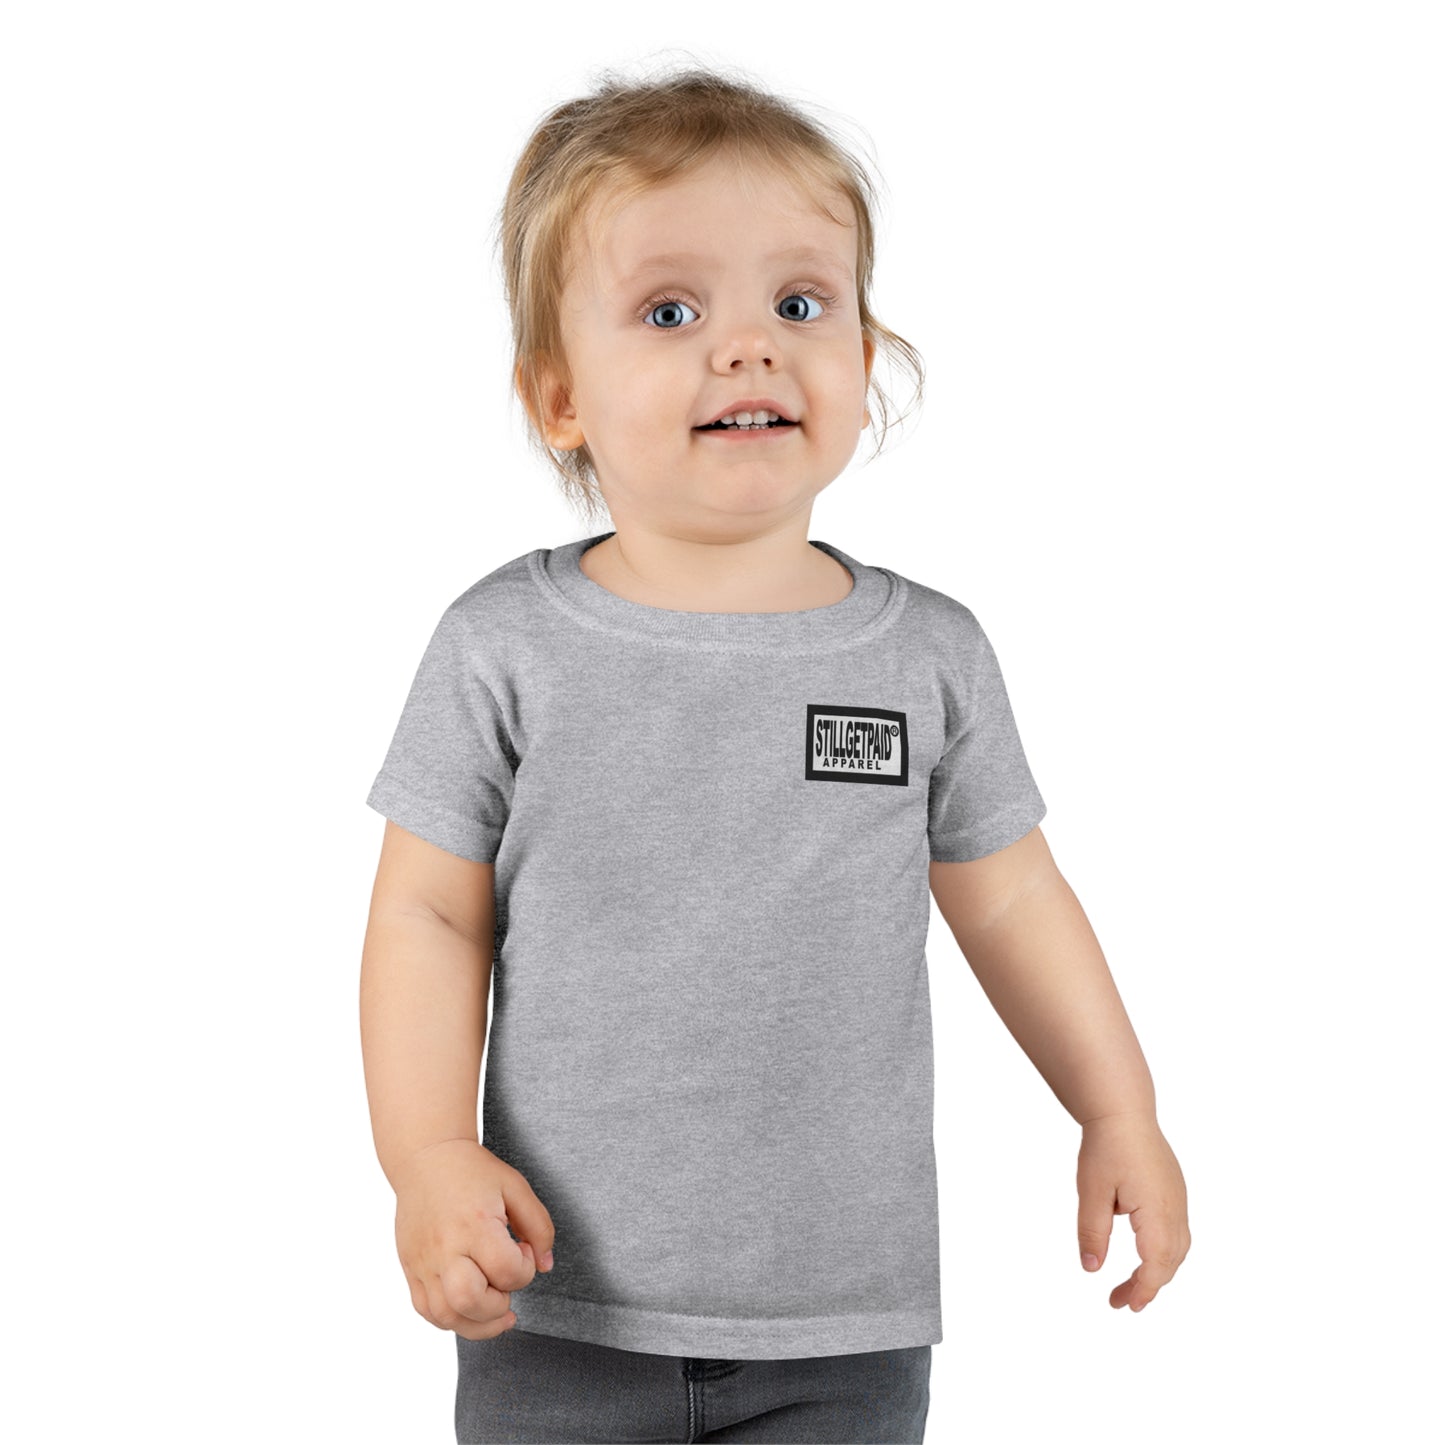 STILLGETPAID®️ APPAREL Toddler T-shirt